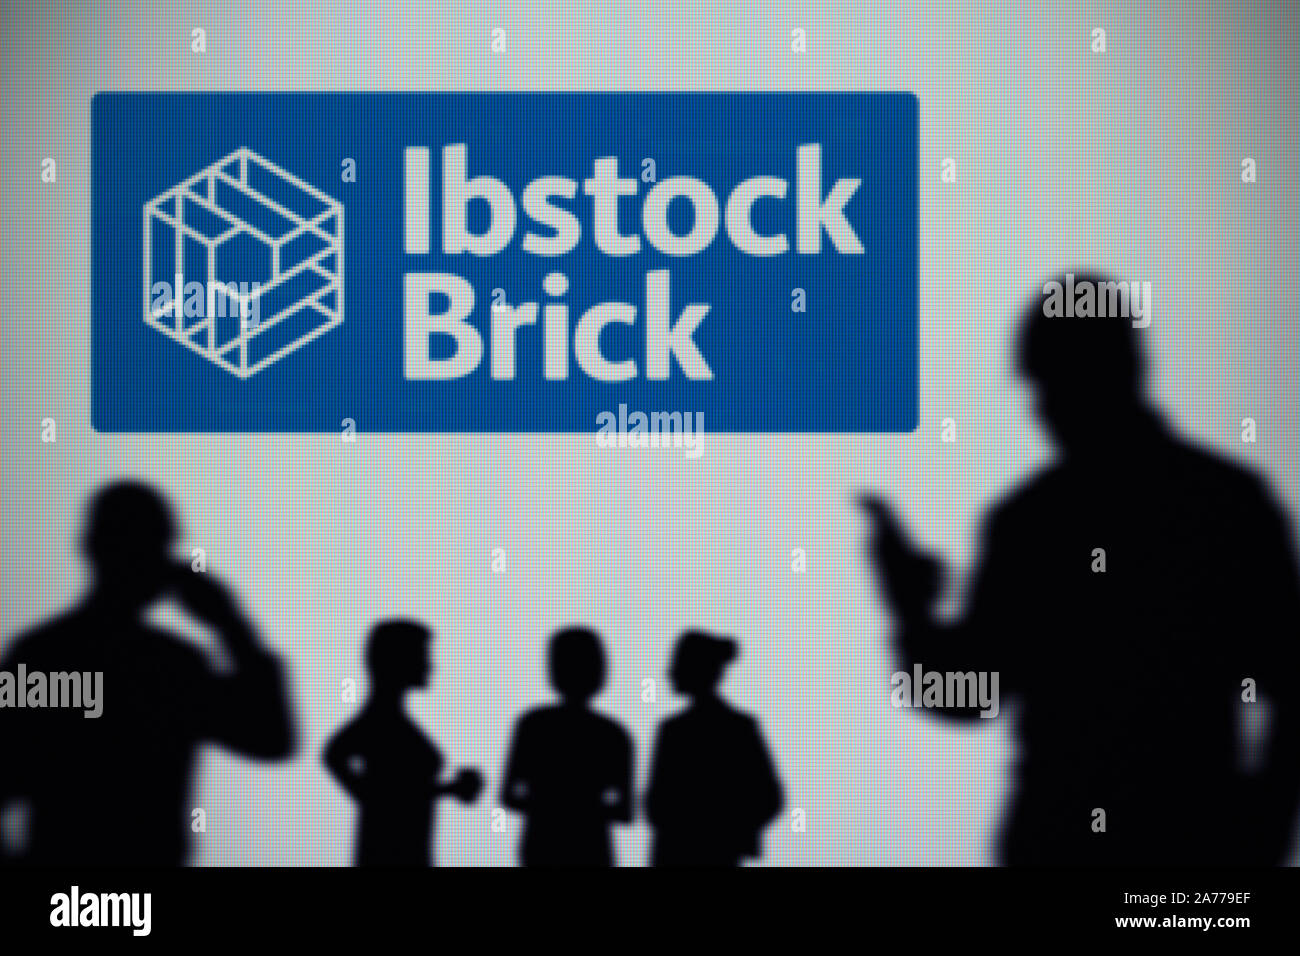 La Ibstock Brick logo se ve en una pantalla LED en el fondo mientras una silueta persona utiliza un smartphone (uso Editorial solamente) Foto de stock